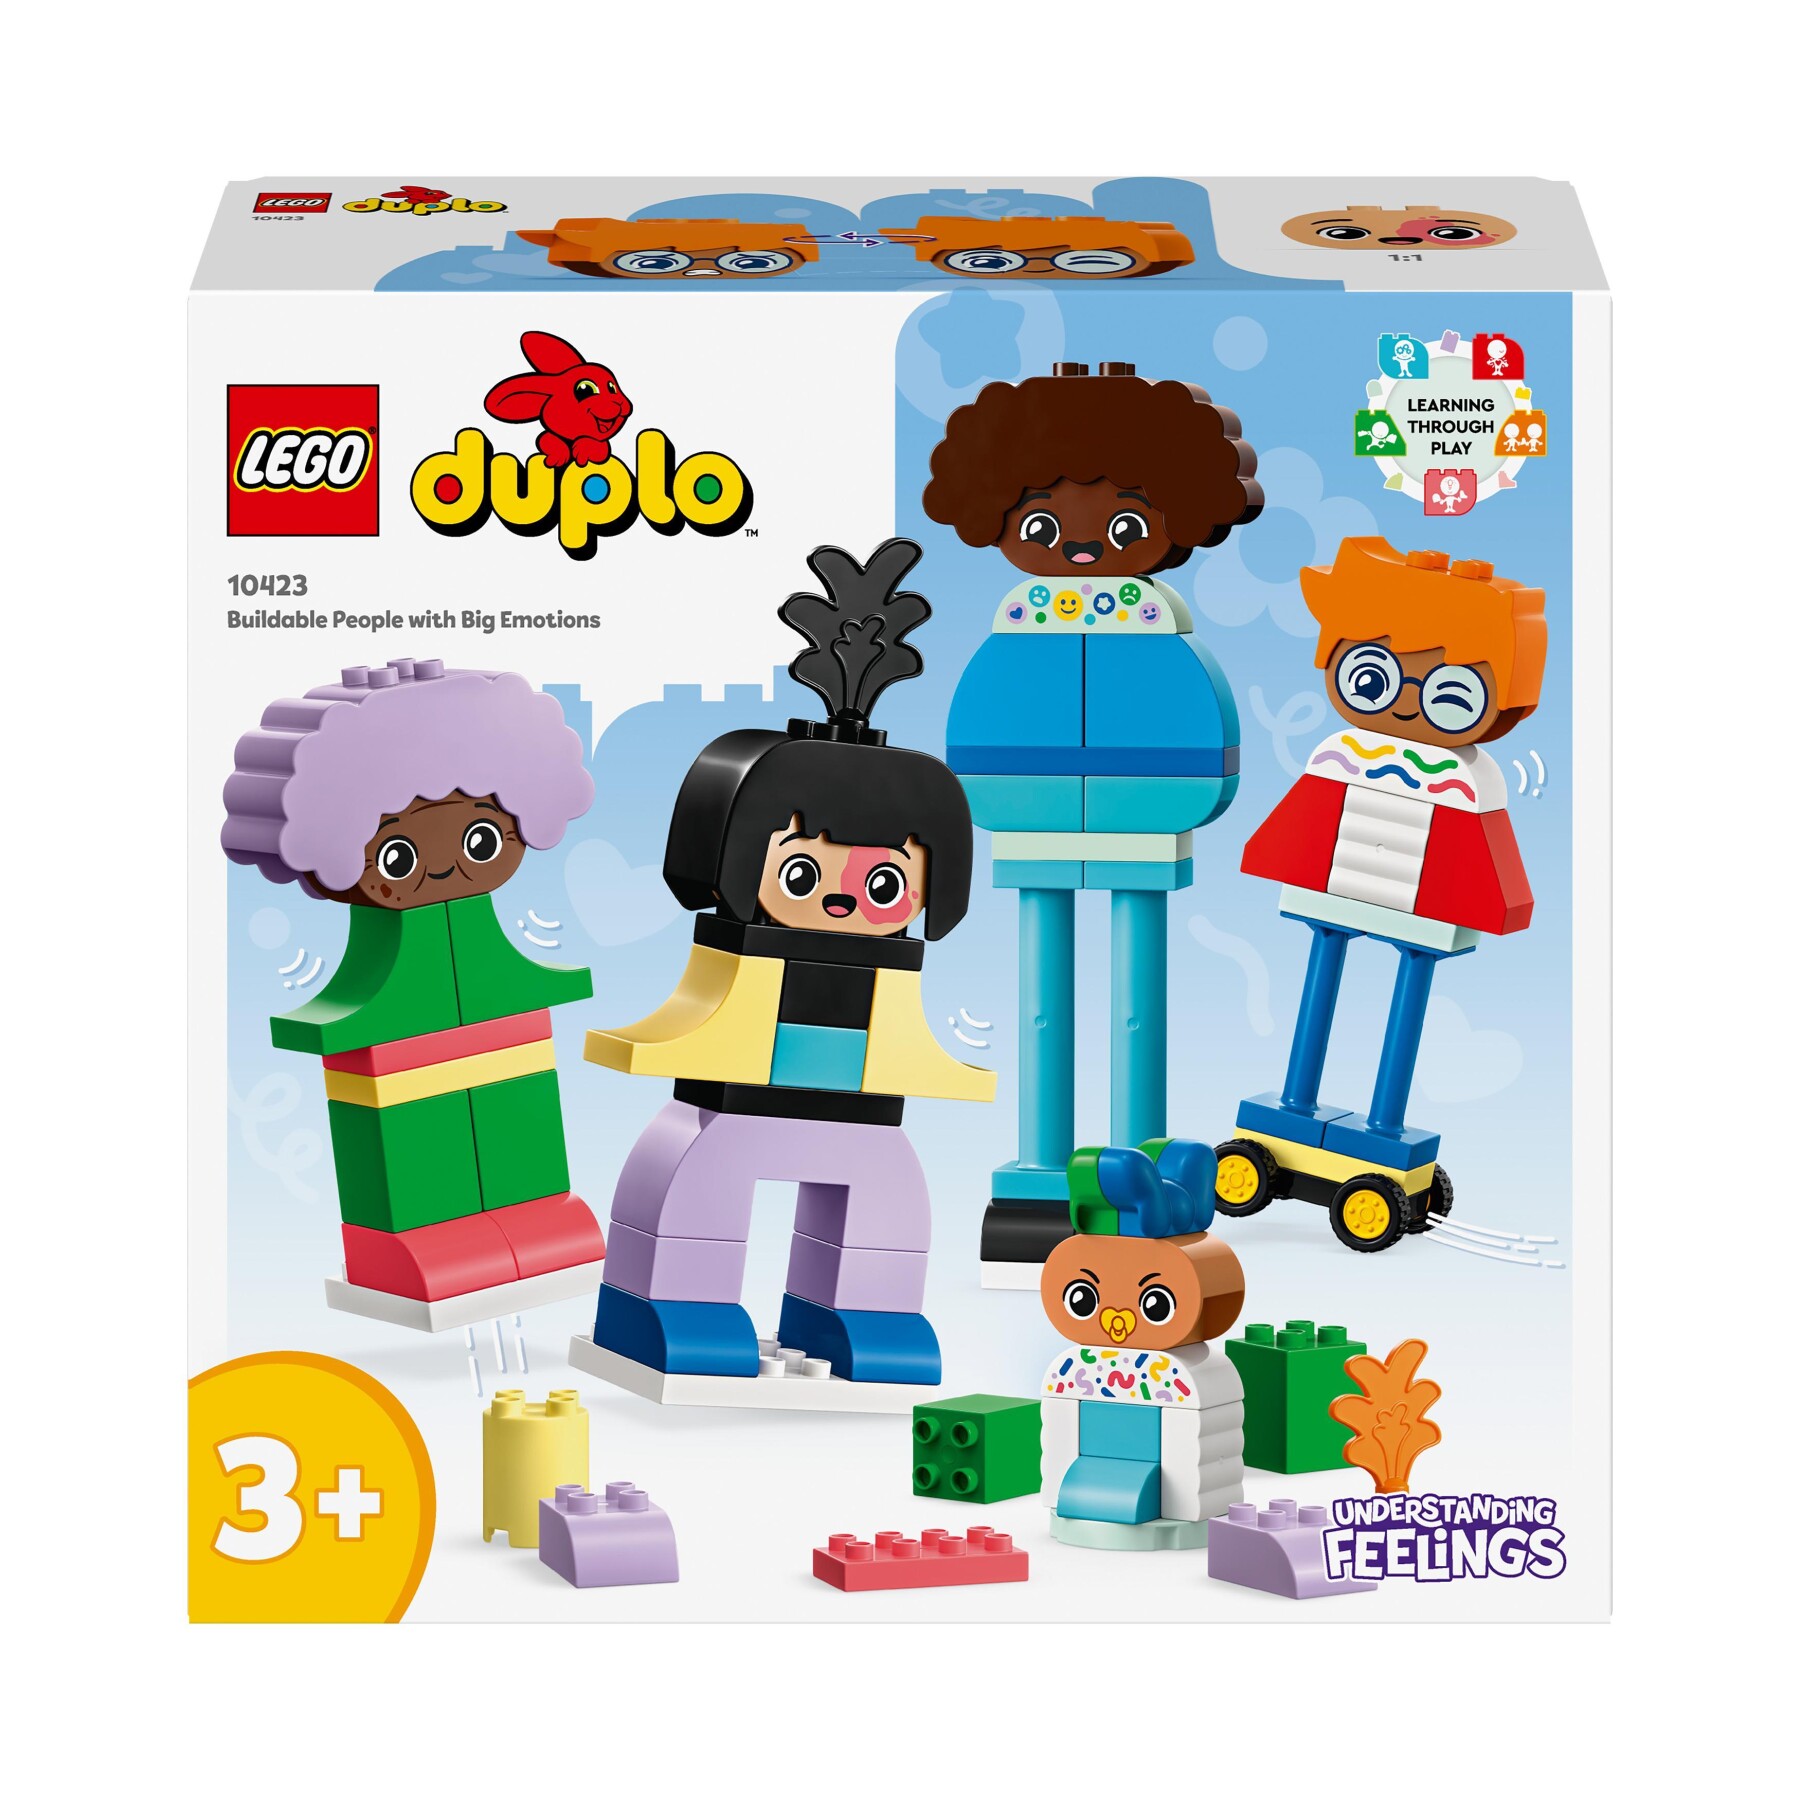 Lego duplo 10423 persone da costruire con grandi emozioni, gioco per bambini 3+ anni in su con 71 mattoncini e 5 personaggi - LEGO DUPLO